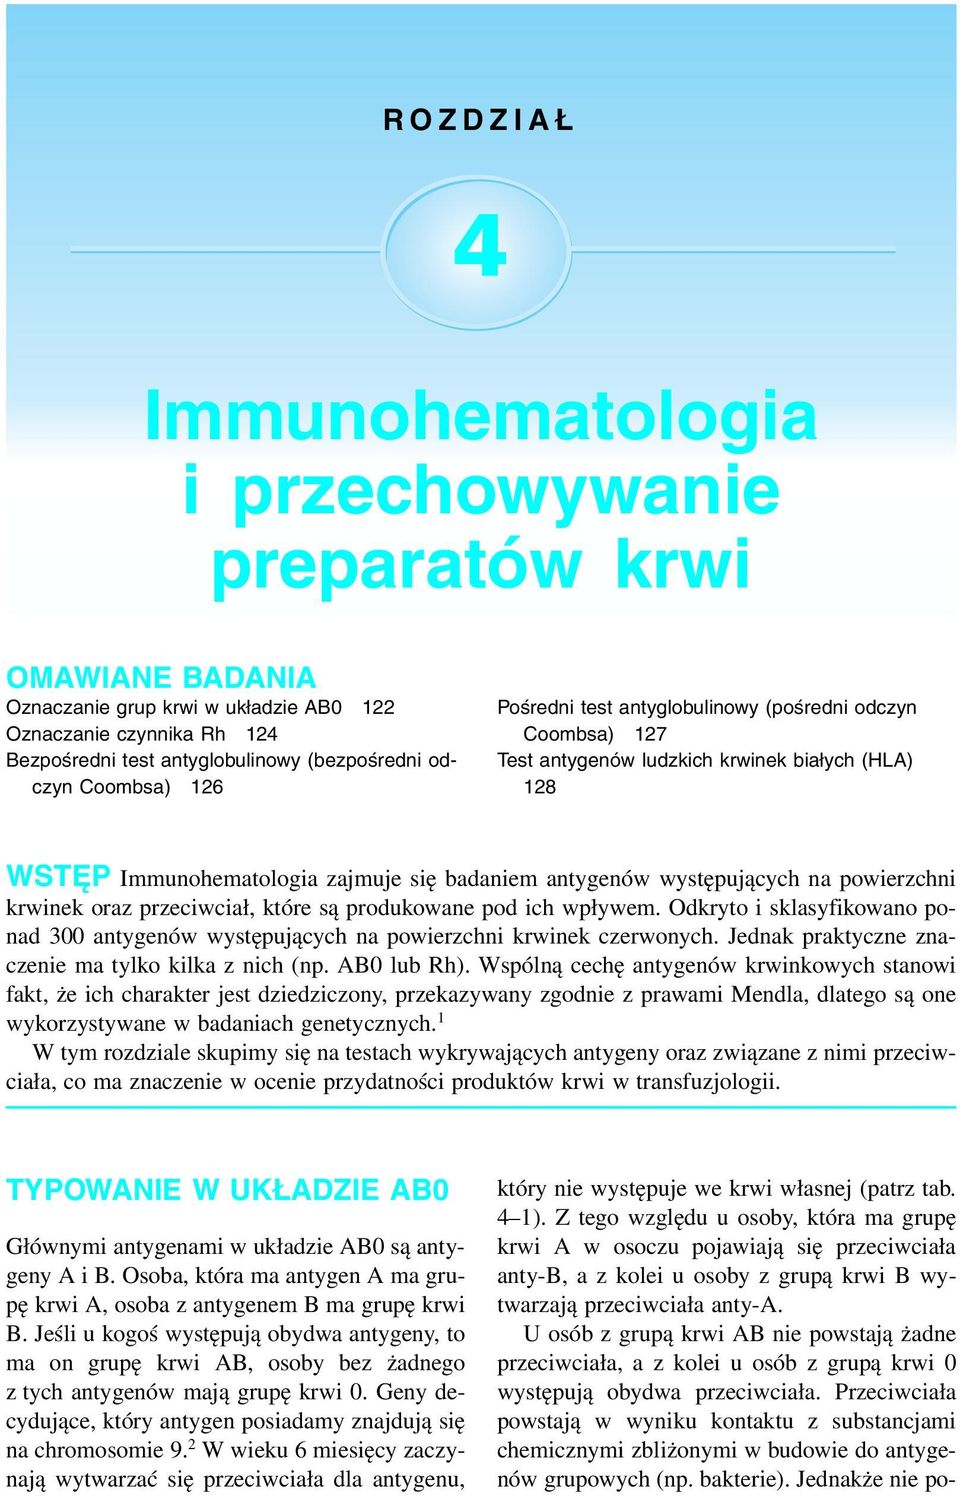 Immunohematologia i przechowywanie preparatów krwi - PDF Free Download